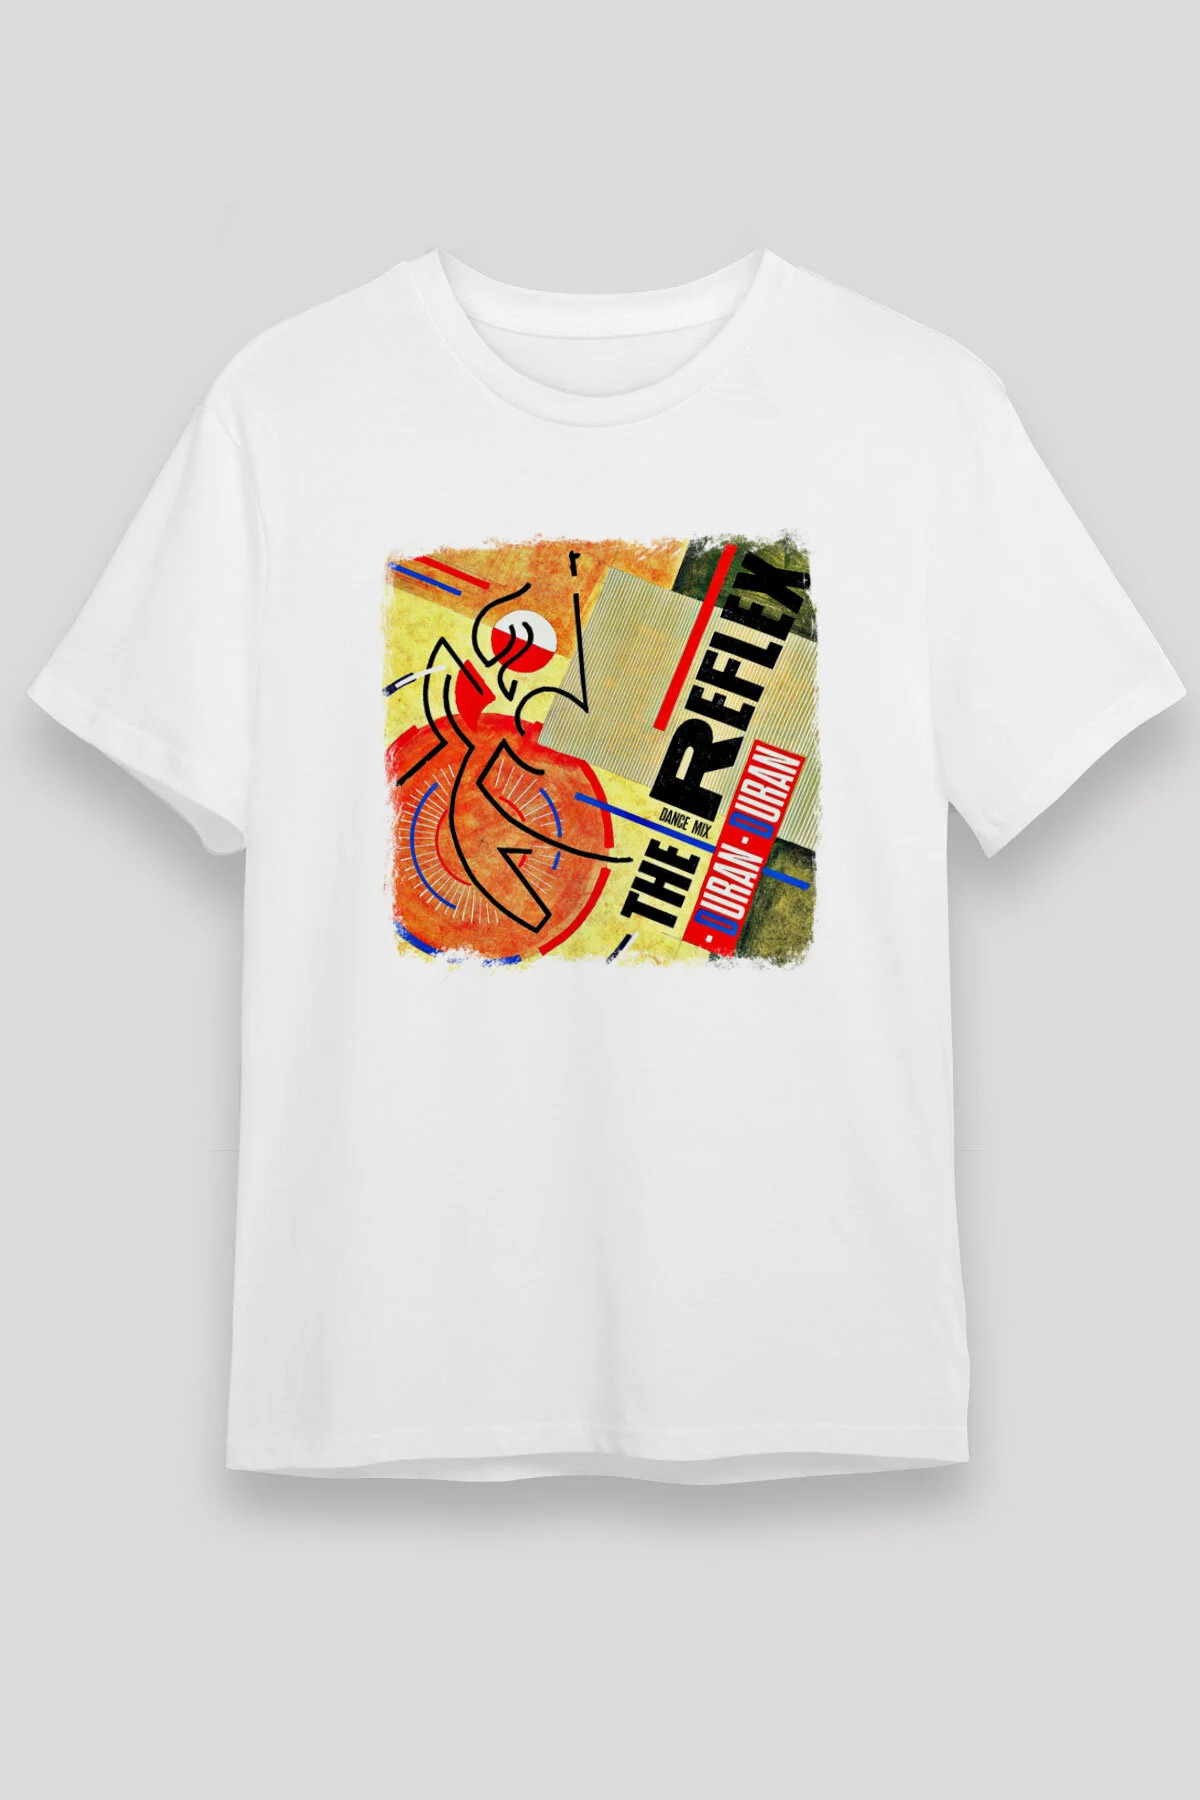 Duran Duran  T shirt , Music Band ,Unisex Tshirt  12/